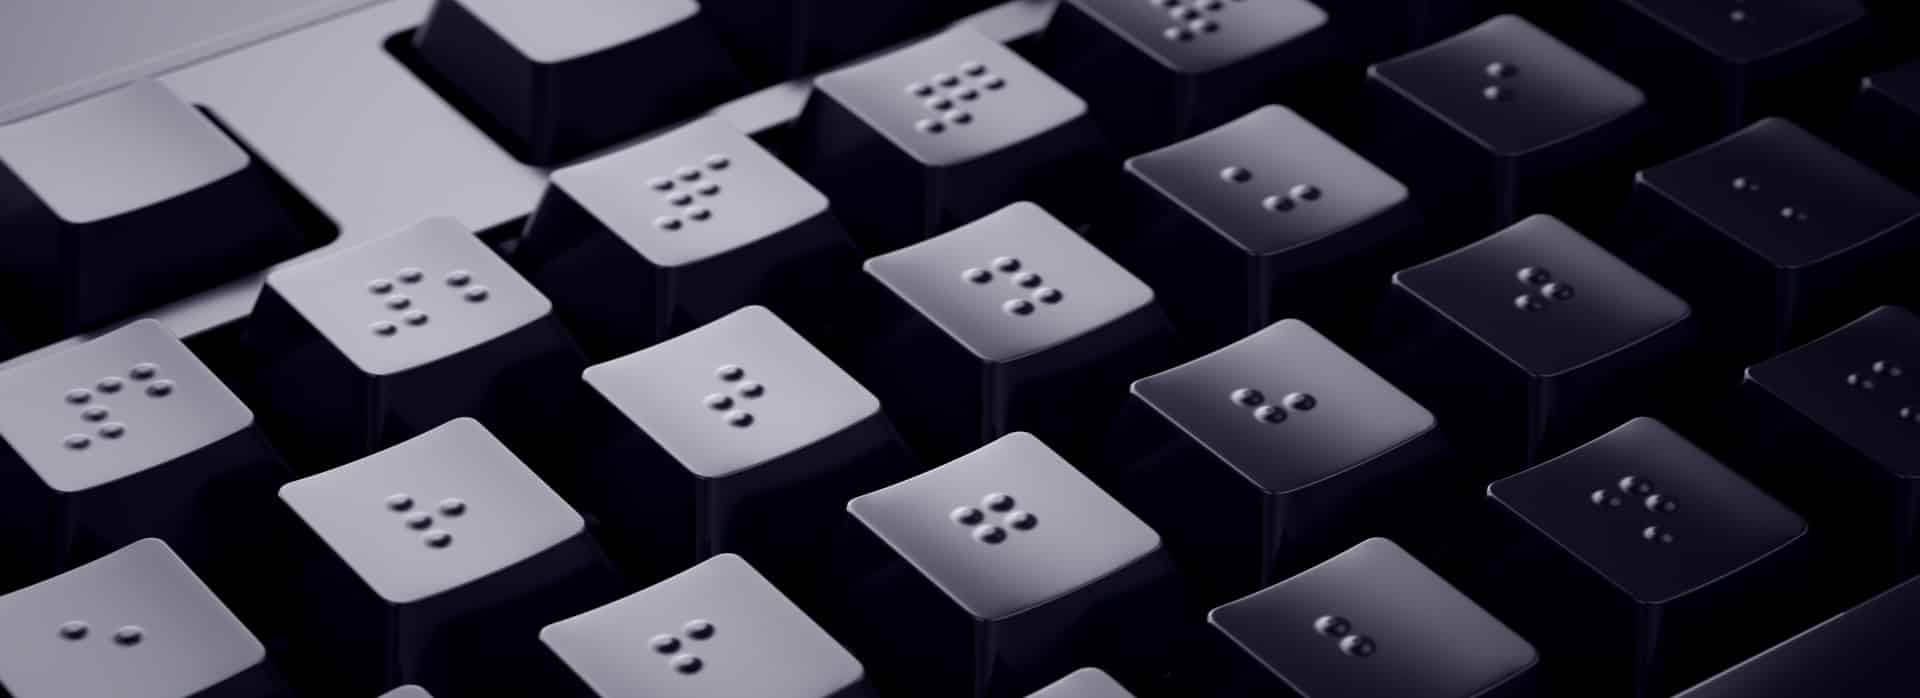 Braille computer keyboard